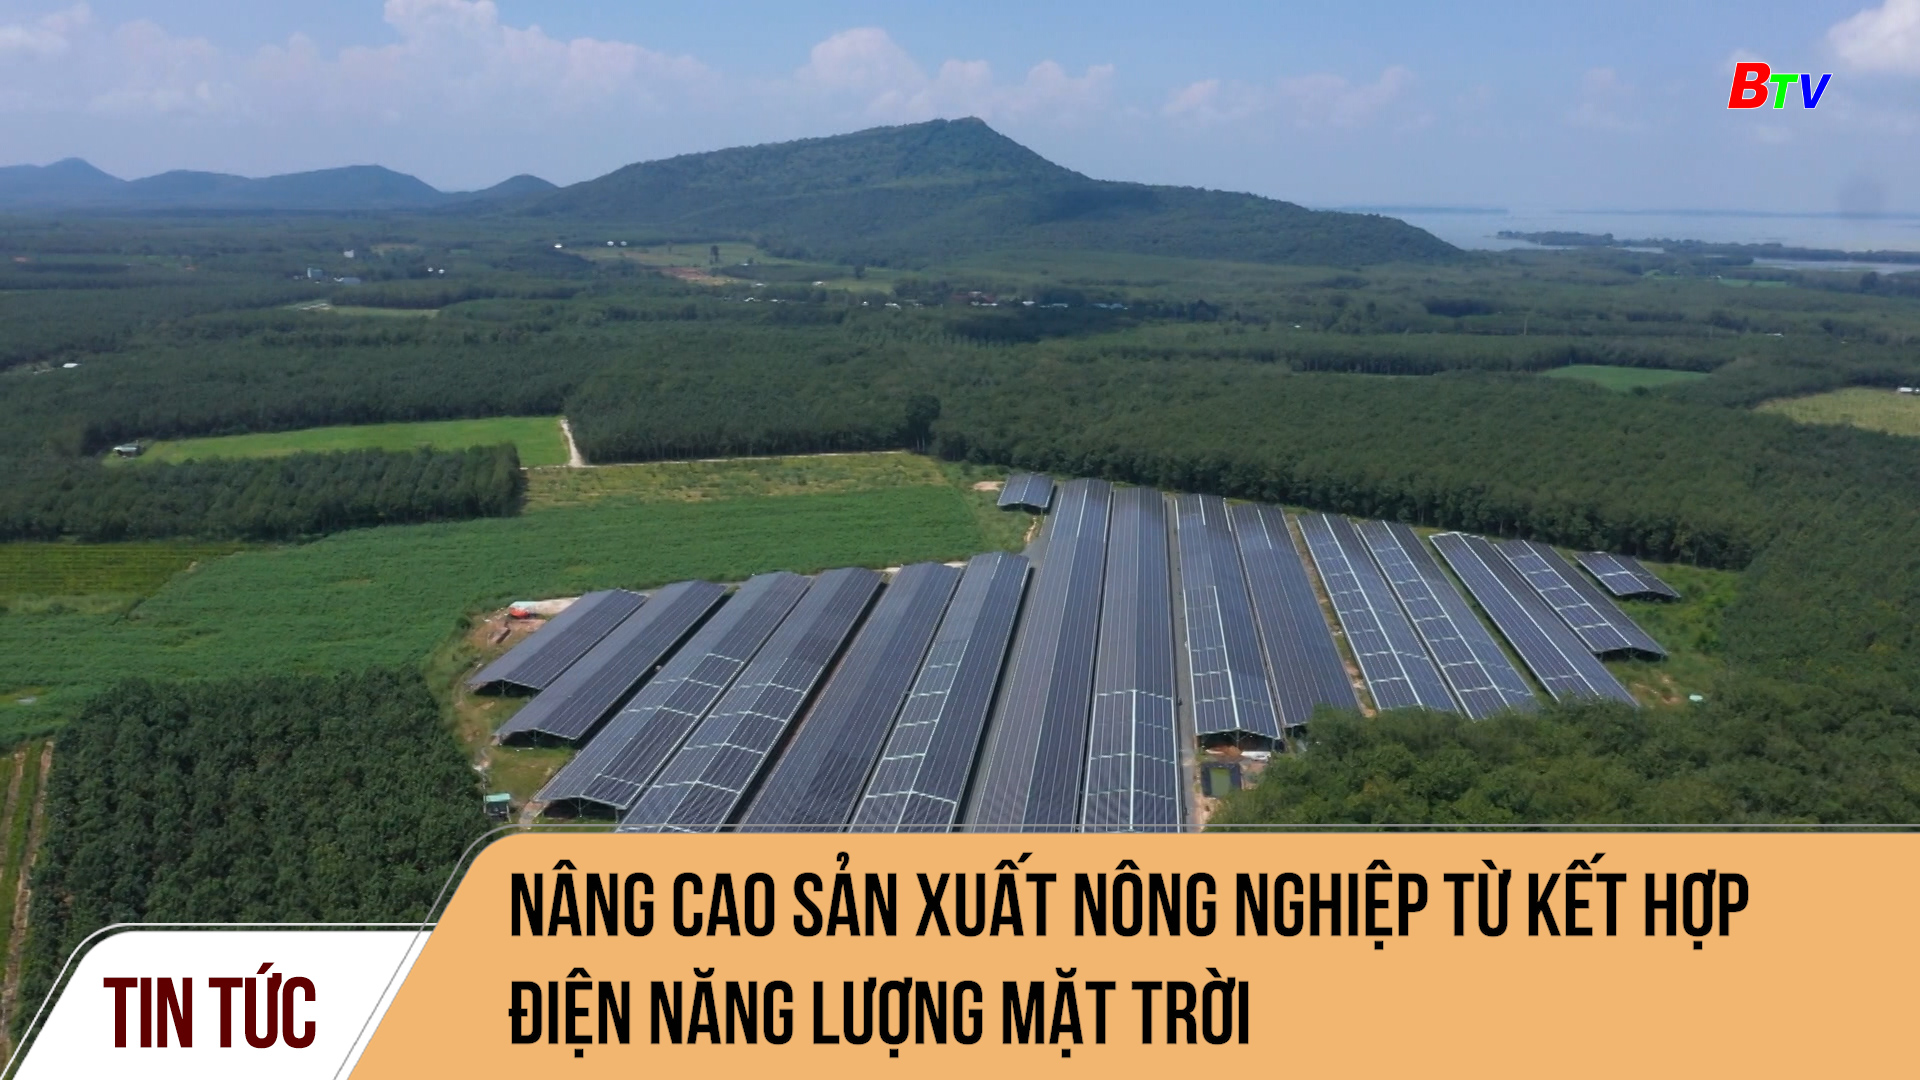 Nâng cao sản xuất nông nghiệp từ kết hợp điện năng lượng mặt trời